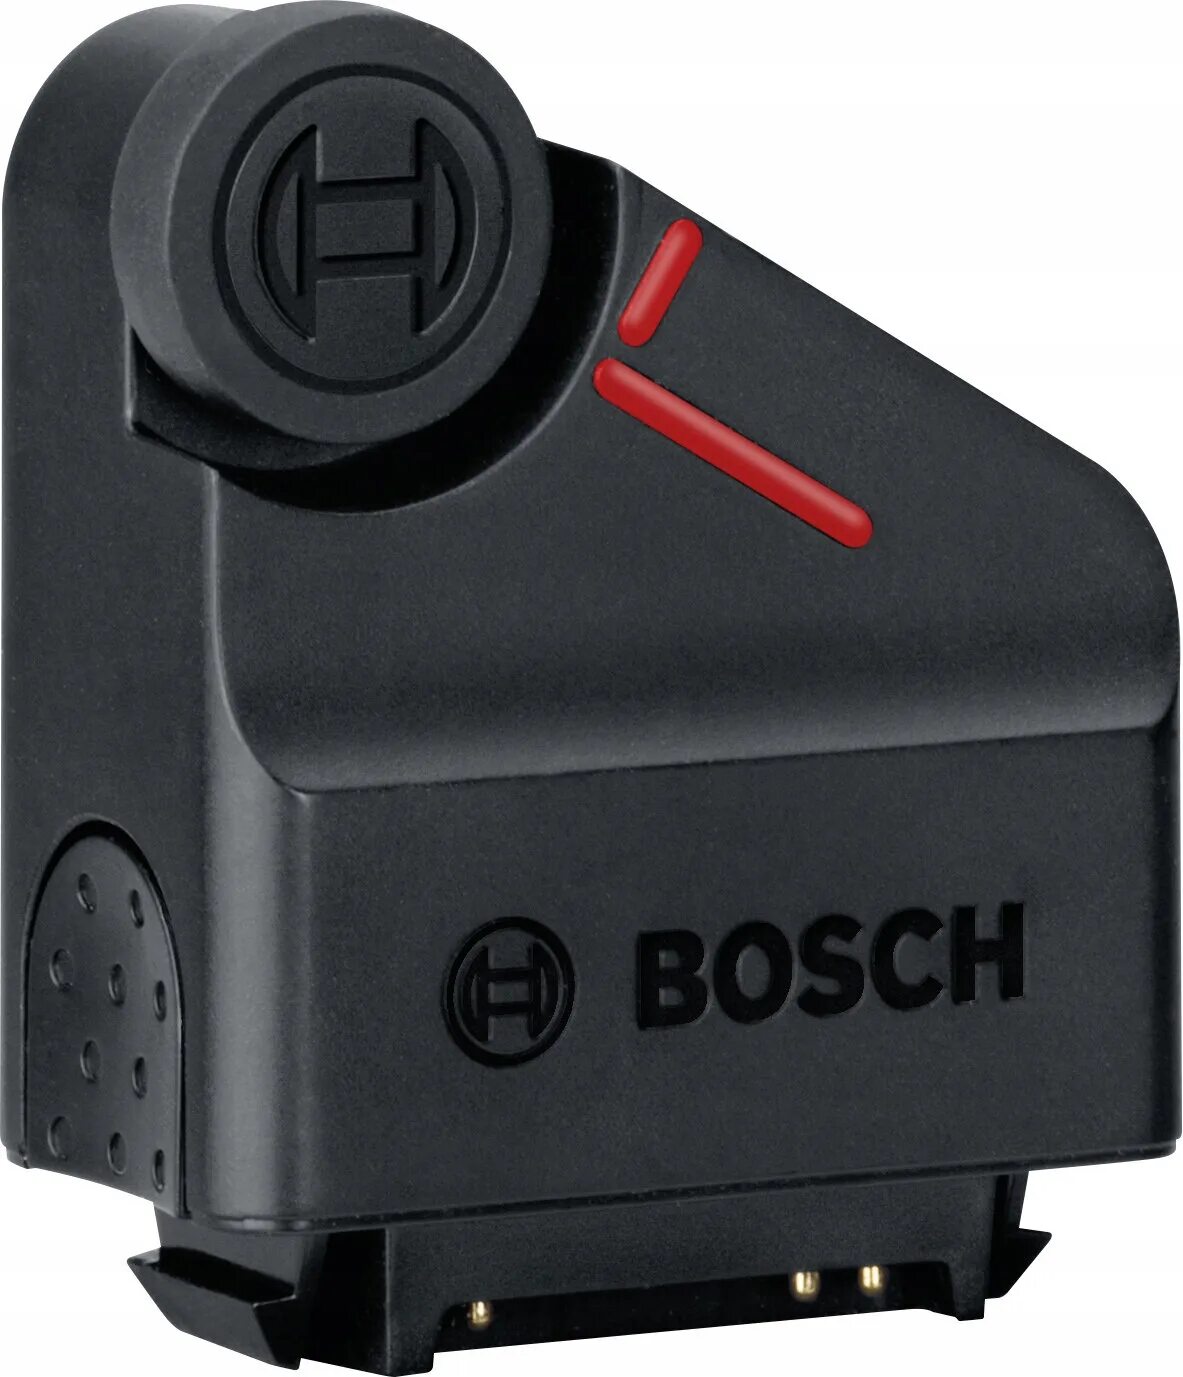 Bosch Zamo адаптер. Адаптер Рулетка Bosch для Zamo III. Адаптер для лазерной рулетки бош. Лазерный дальномер Bosch Zamo насадки. Адаптер бош